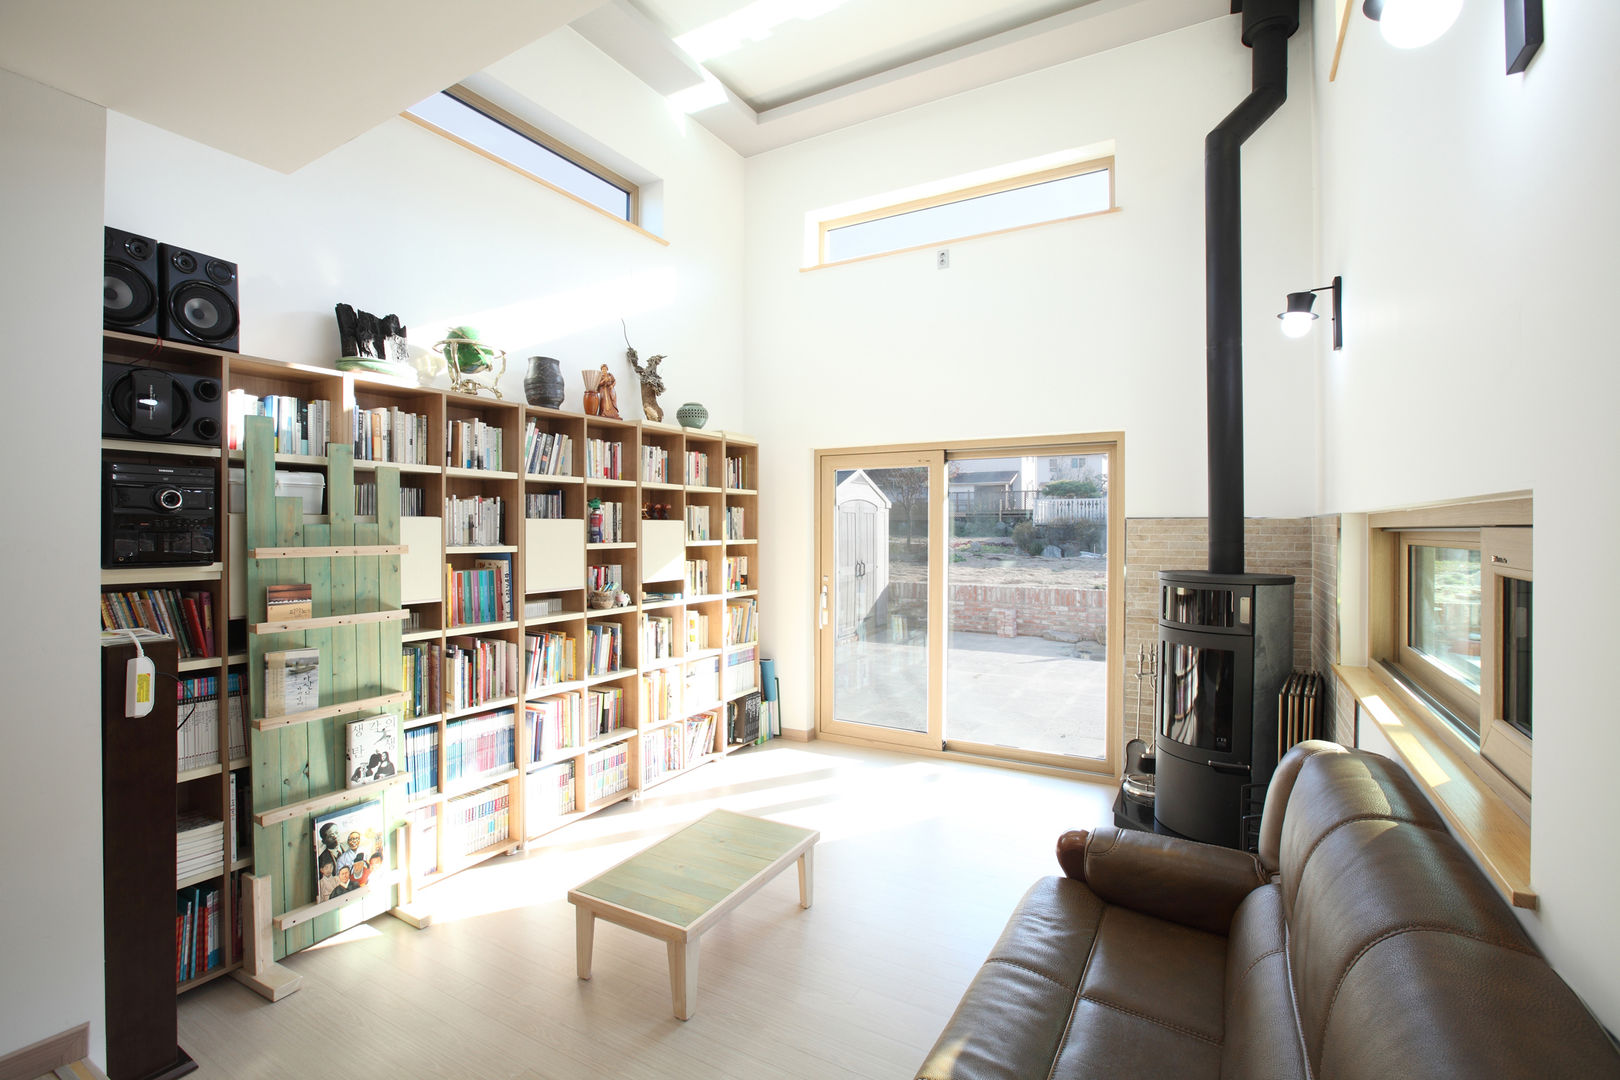 3대가 사는 집 용인 양지주택, 주택설계전문 디자인그룹 홈스타일토토 주택설계전문 디자인그룹 홈스타일토토 Modern living room